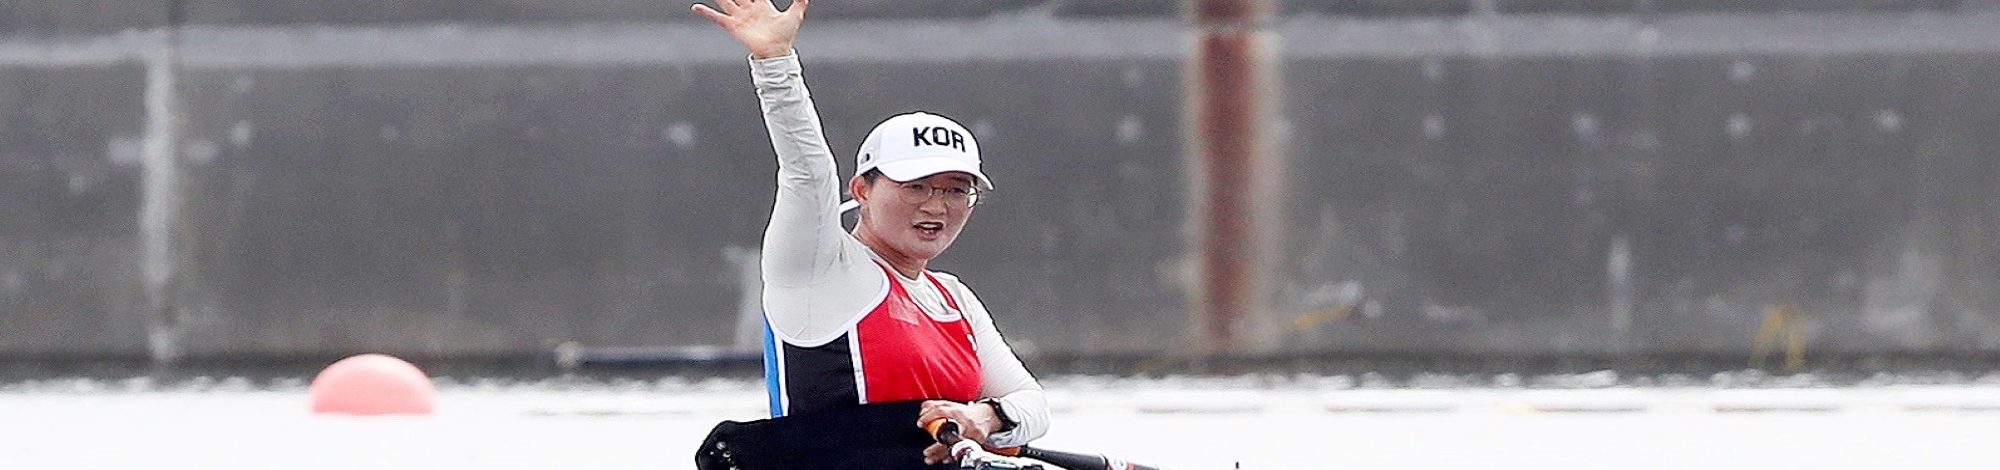 Korea Para Rowing Association